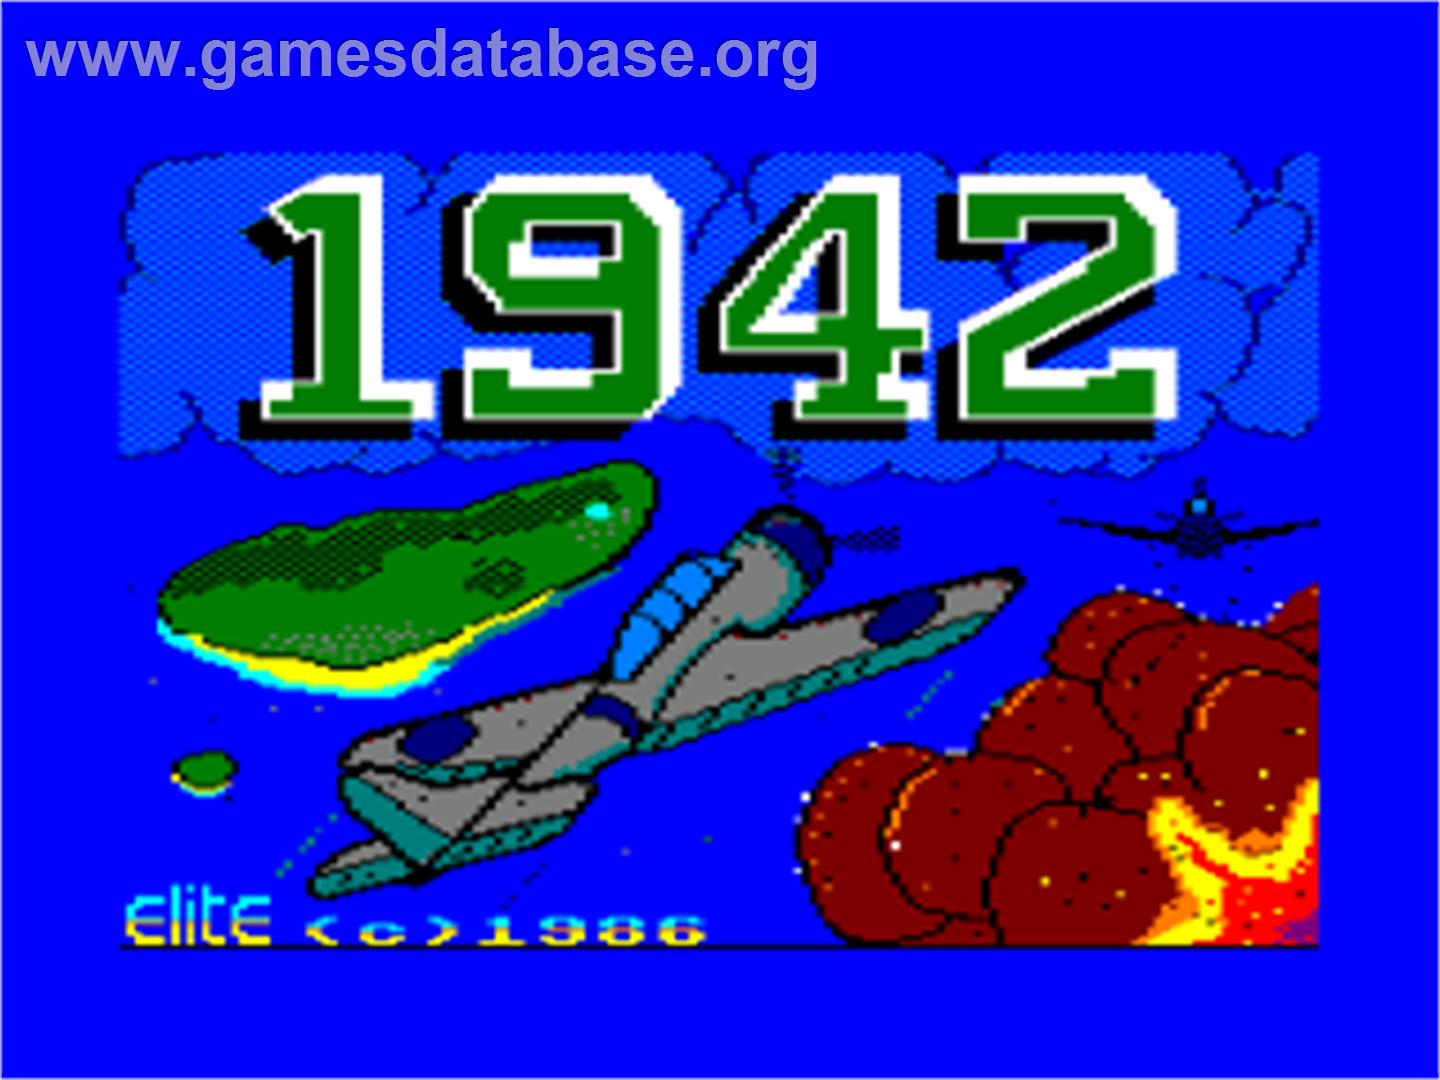 1942 - Amstrad CPC - Artwork - Title Screen